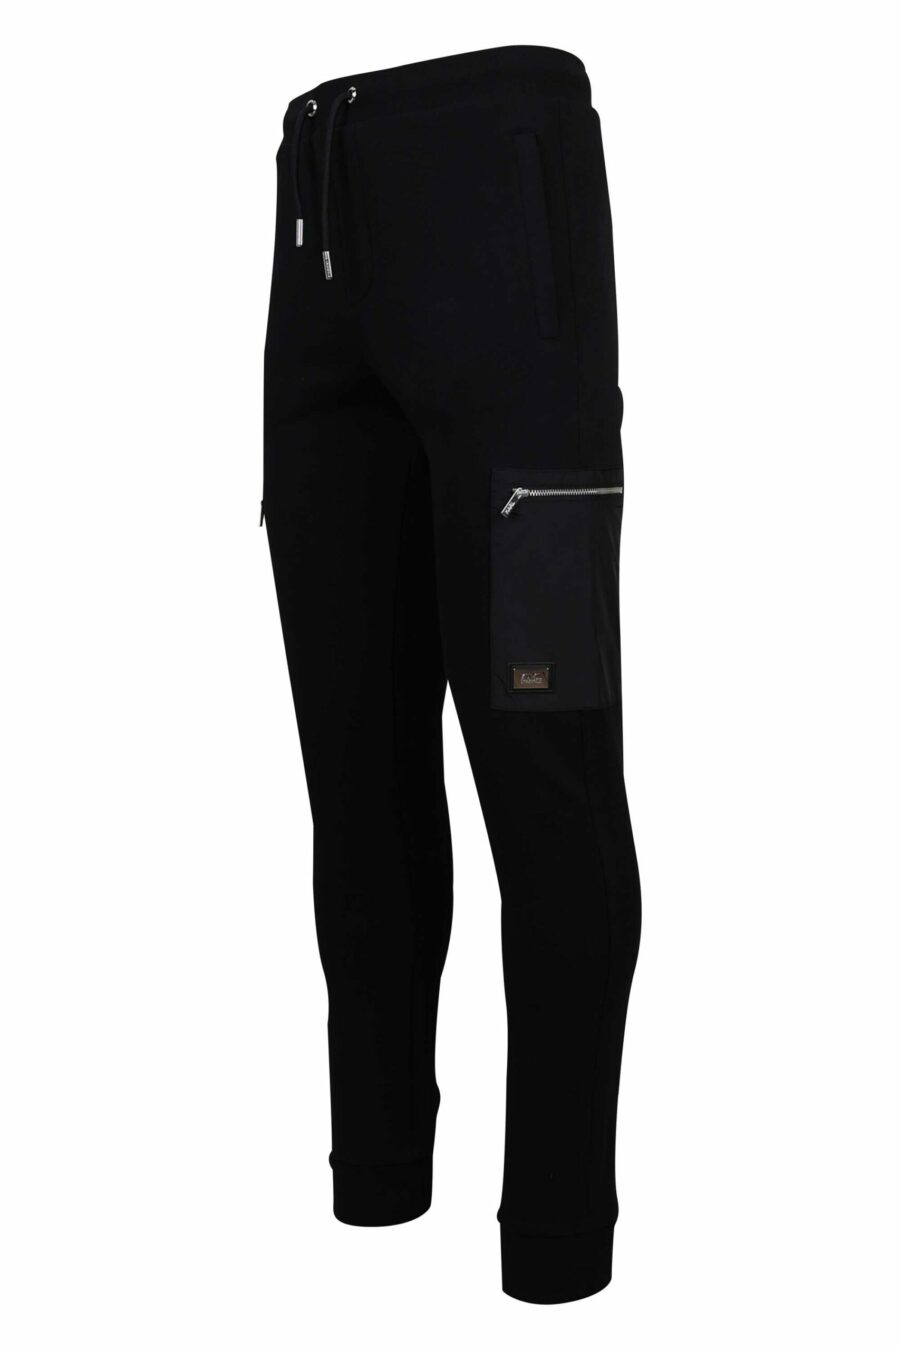 Schwarze Jogginghose mit seitlichen Reißverschlusstaschen - 4062226654265 1 1 skaliert